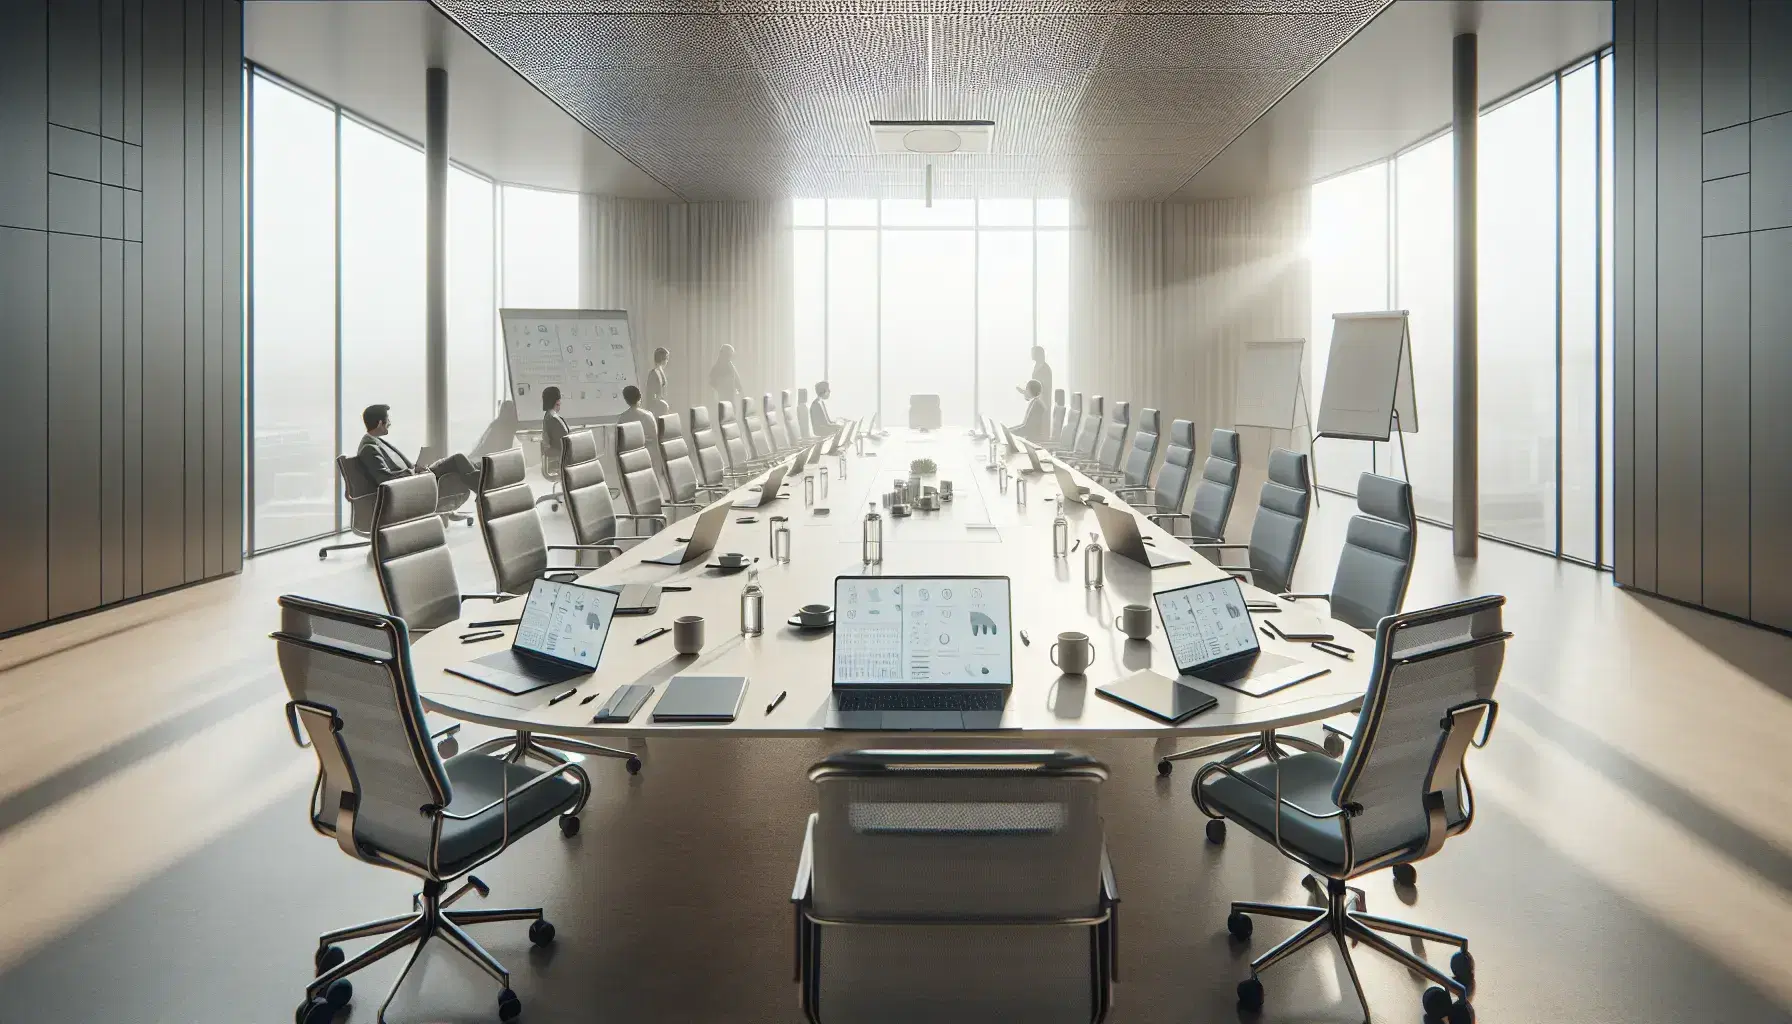 Sala de conferencias moderna con mesa ovalada, sillas ergonómicas y laptops, con personas en reunión de trabajo y luz natural entrando por amplia ventana.